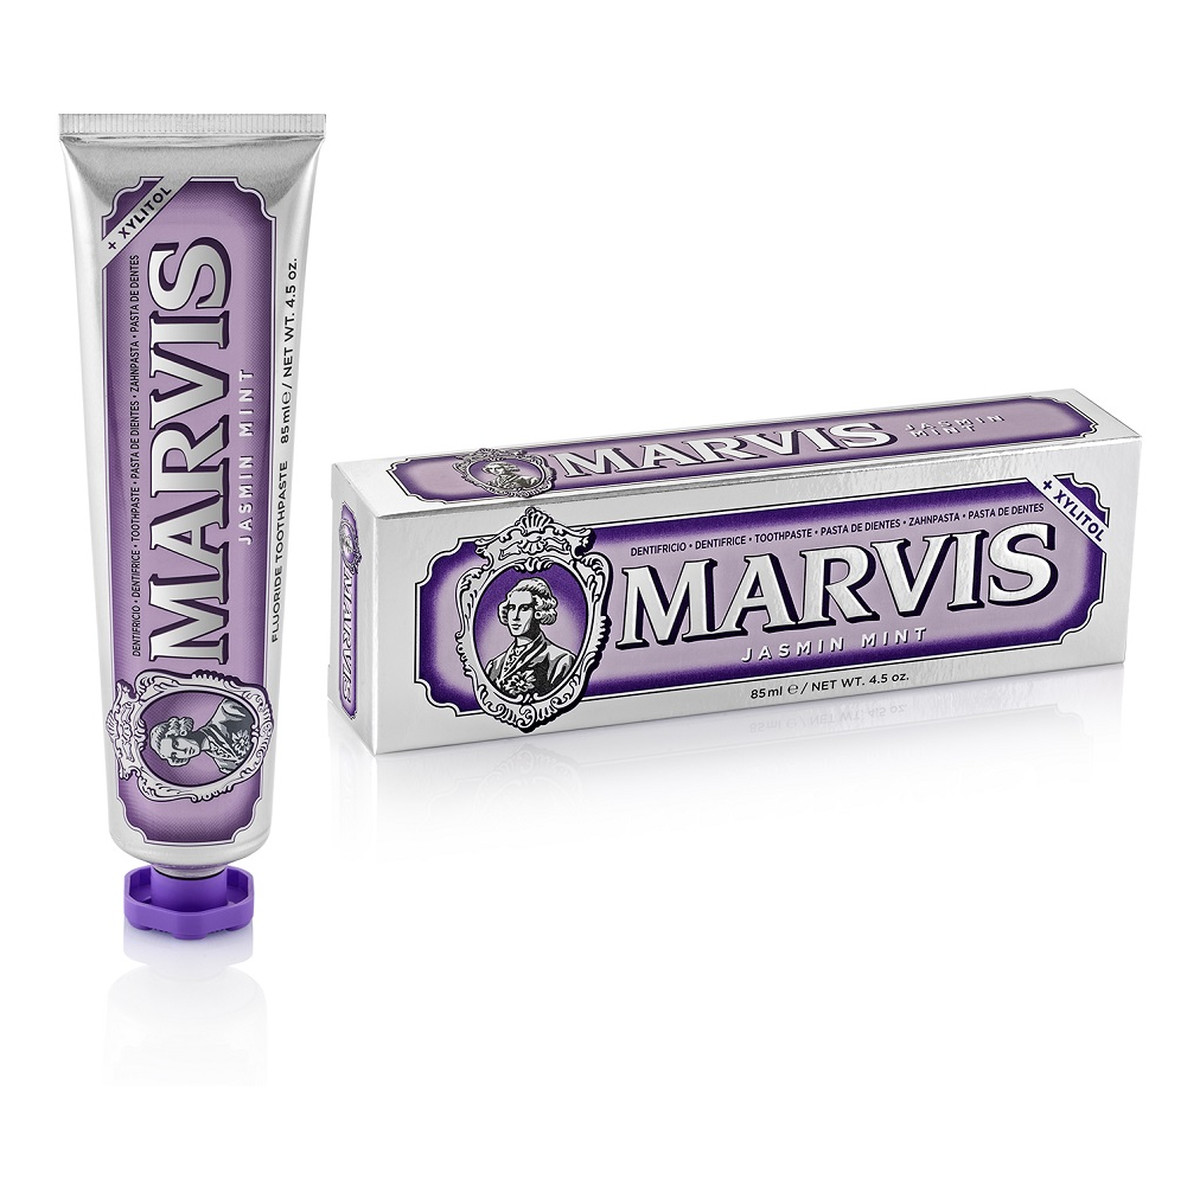 Marvis Fluoride toothpaste pasta do zębów z fluorem jasmin mint 85ml